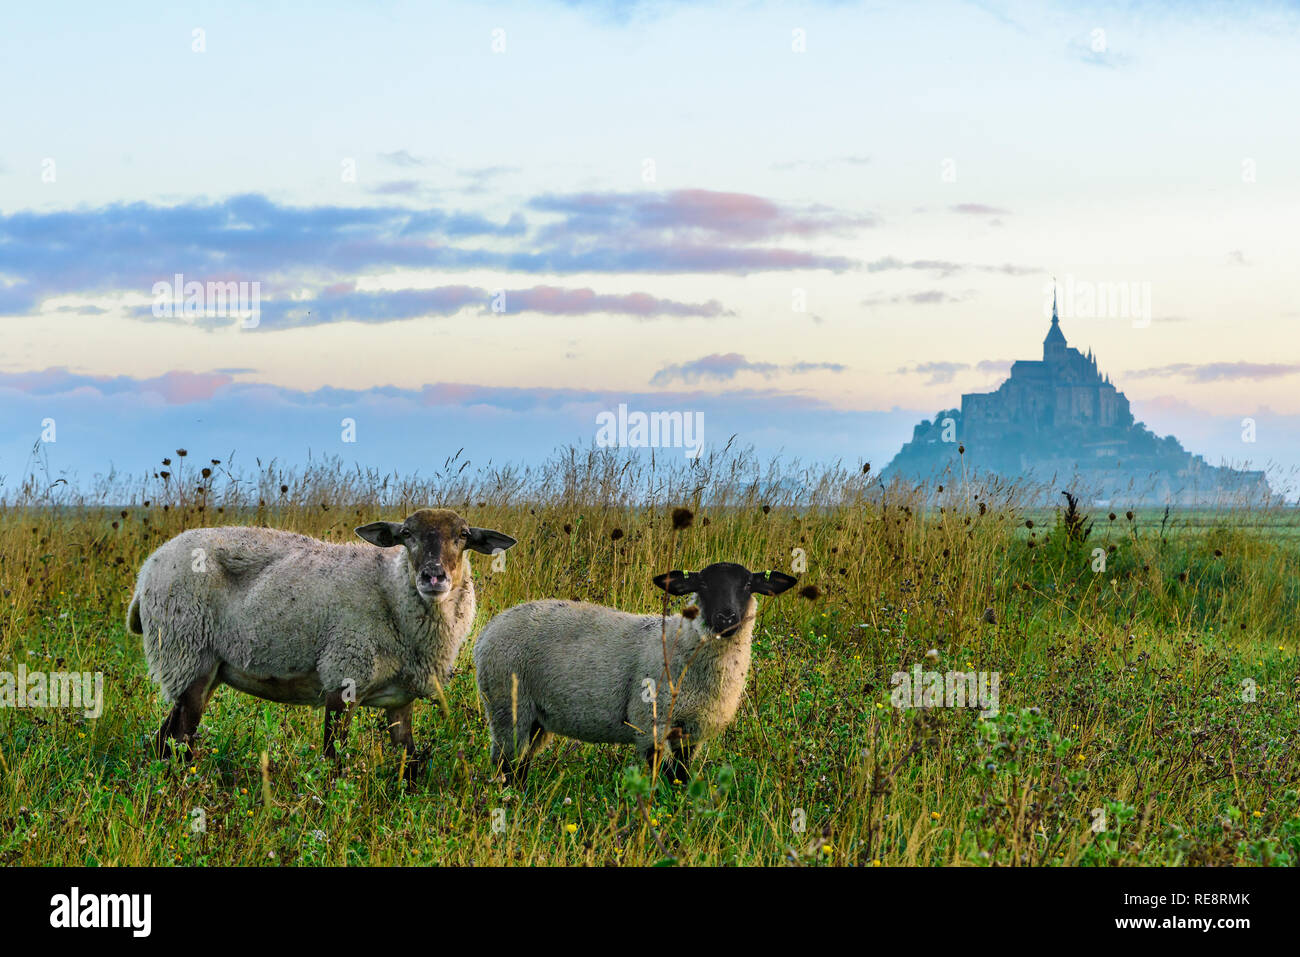 Belle vue sur le Mont Saint Michel l'abbaye sur l'île avec des moutons sur le terrain, la Normandie, le nord de la France, Europe Banque D'Images